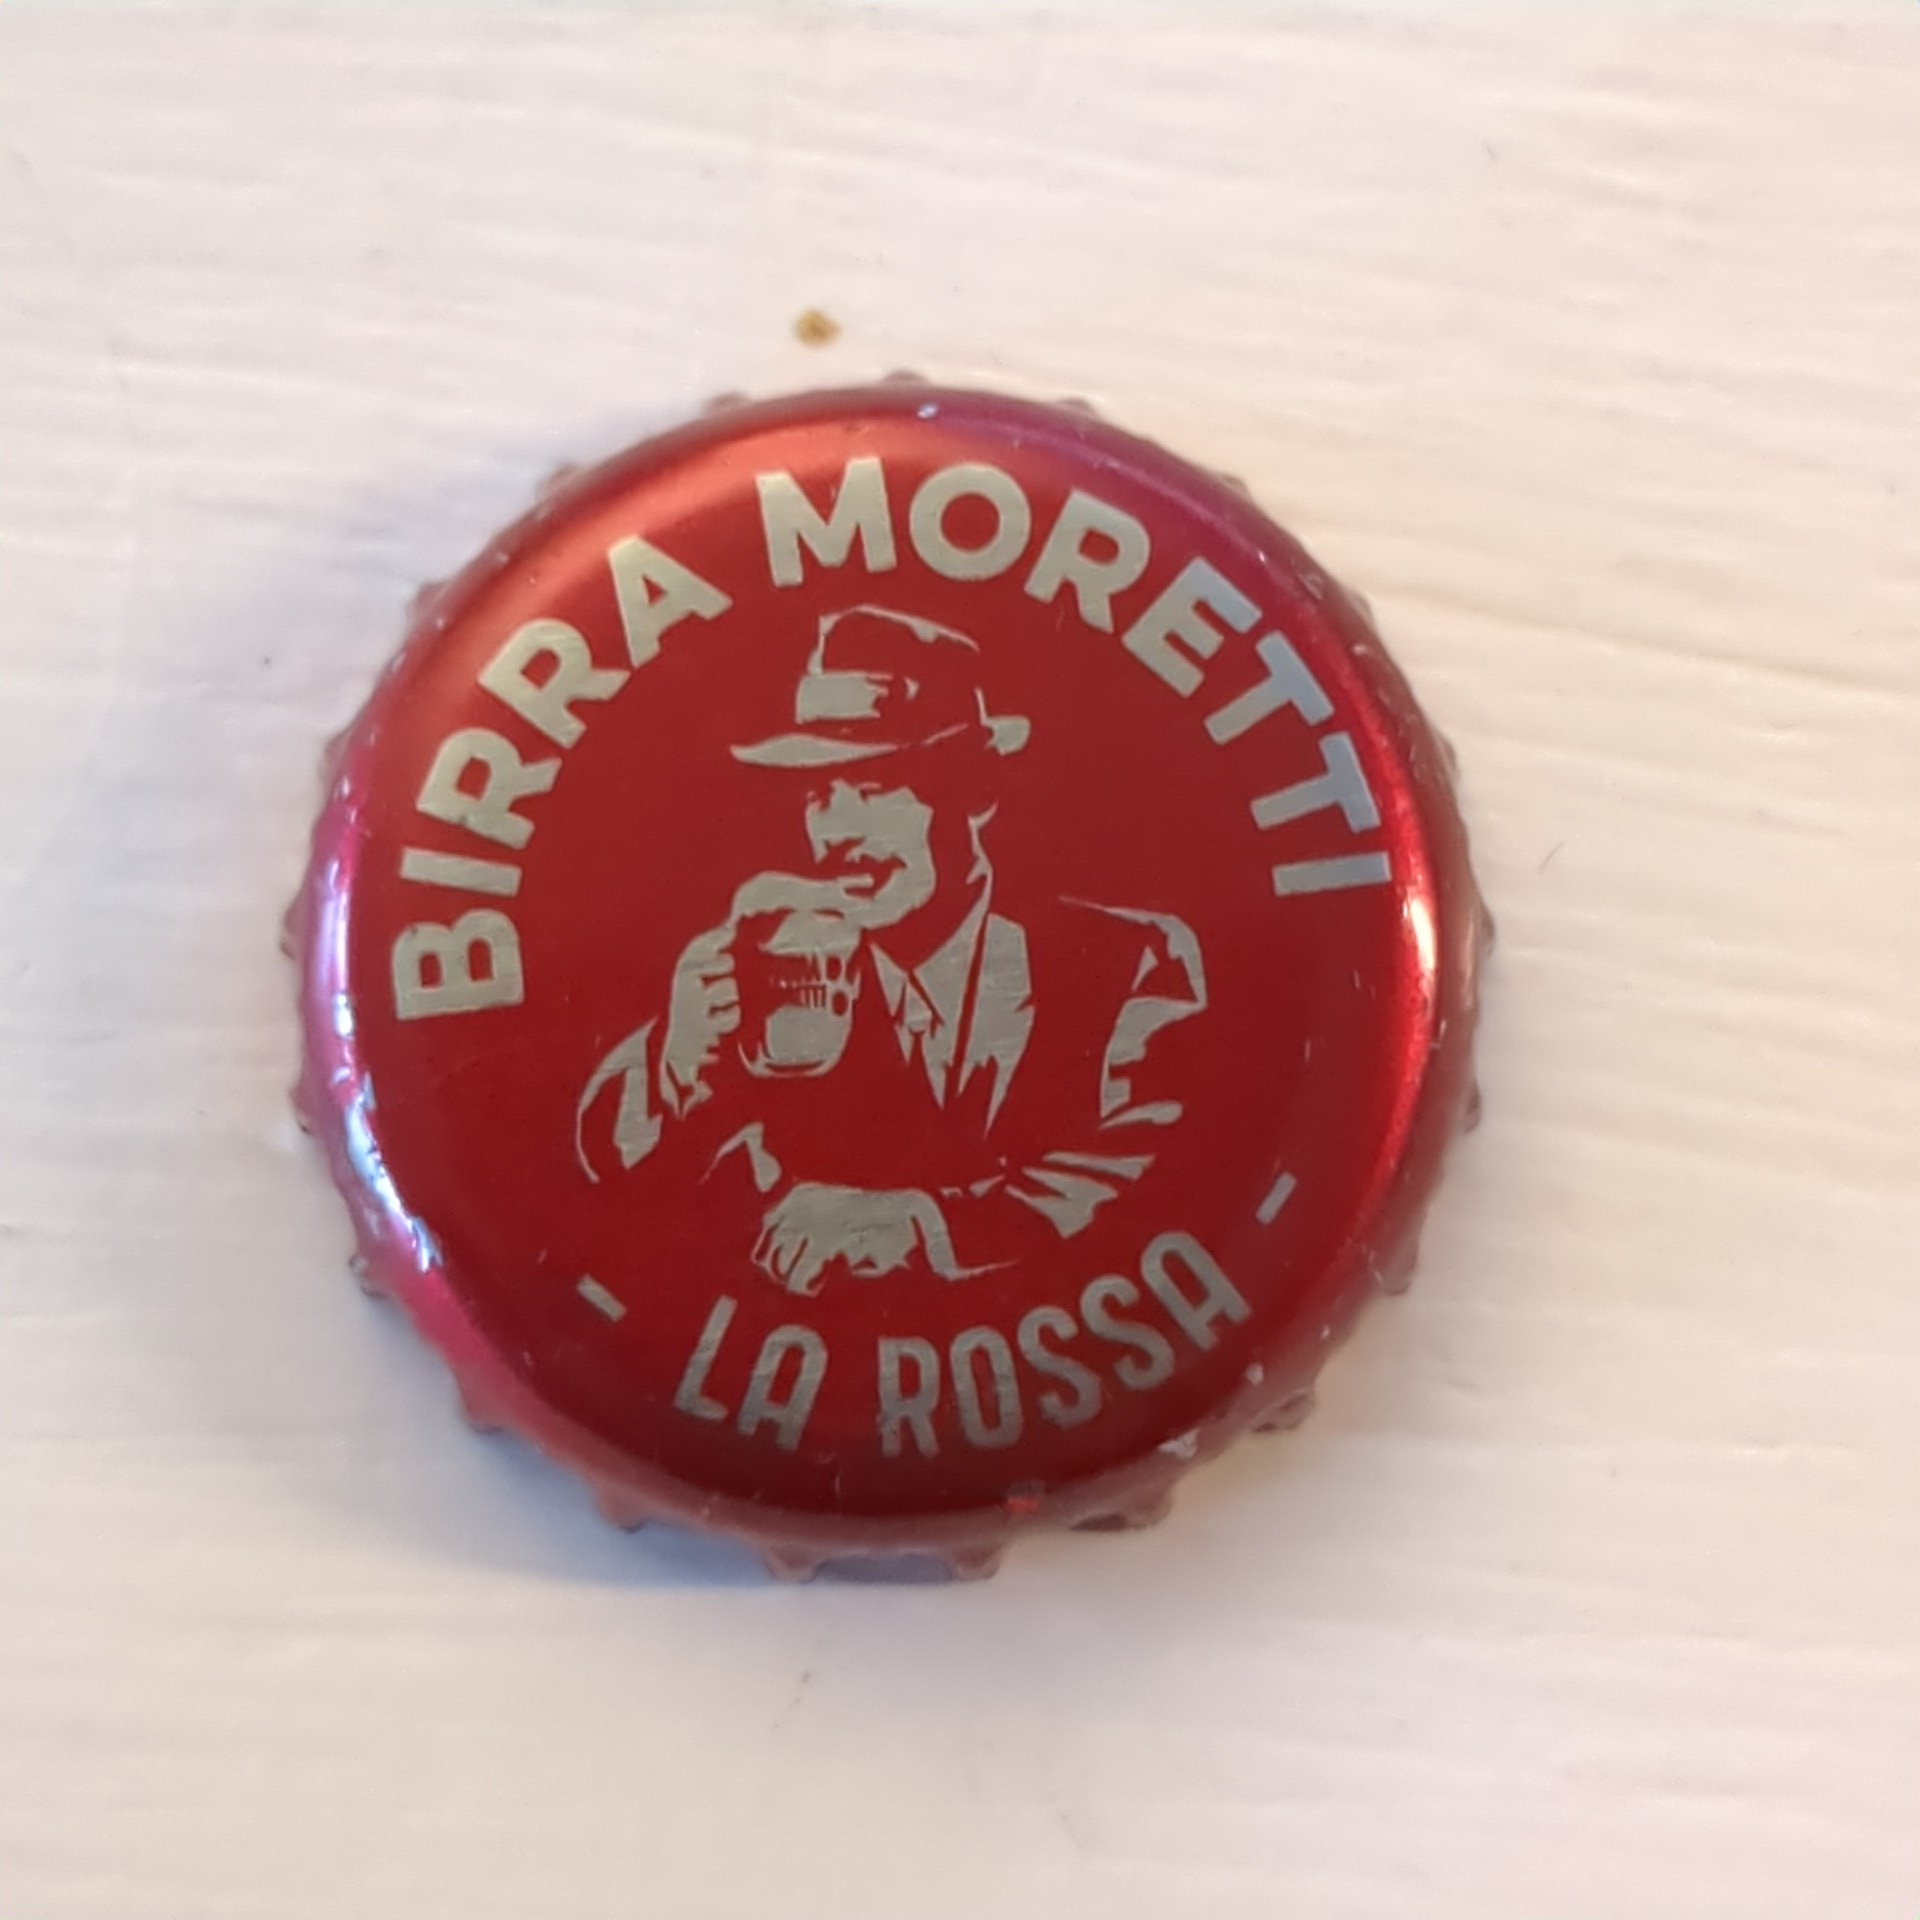 Birra Moretti La Rossa